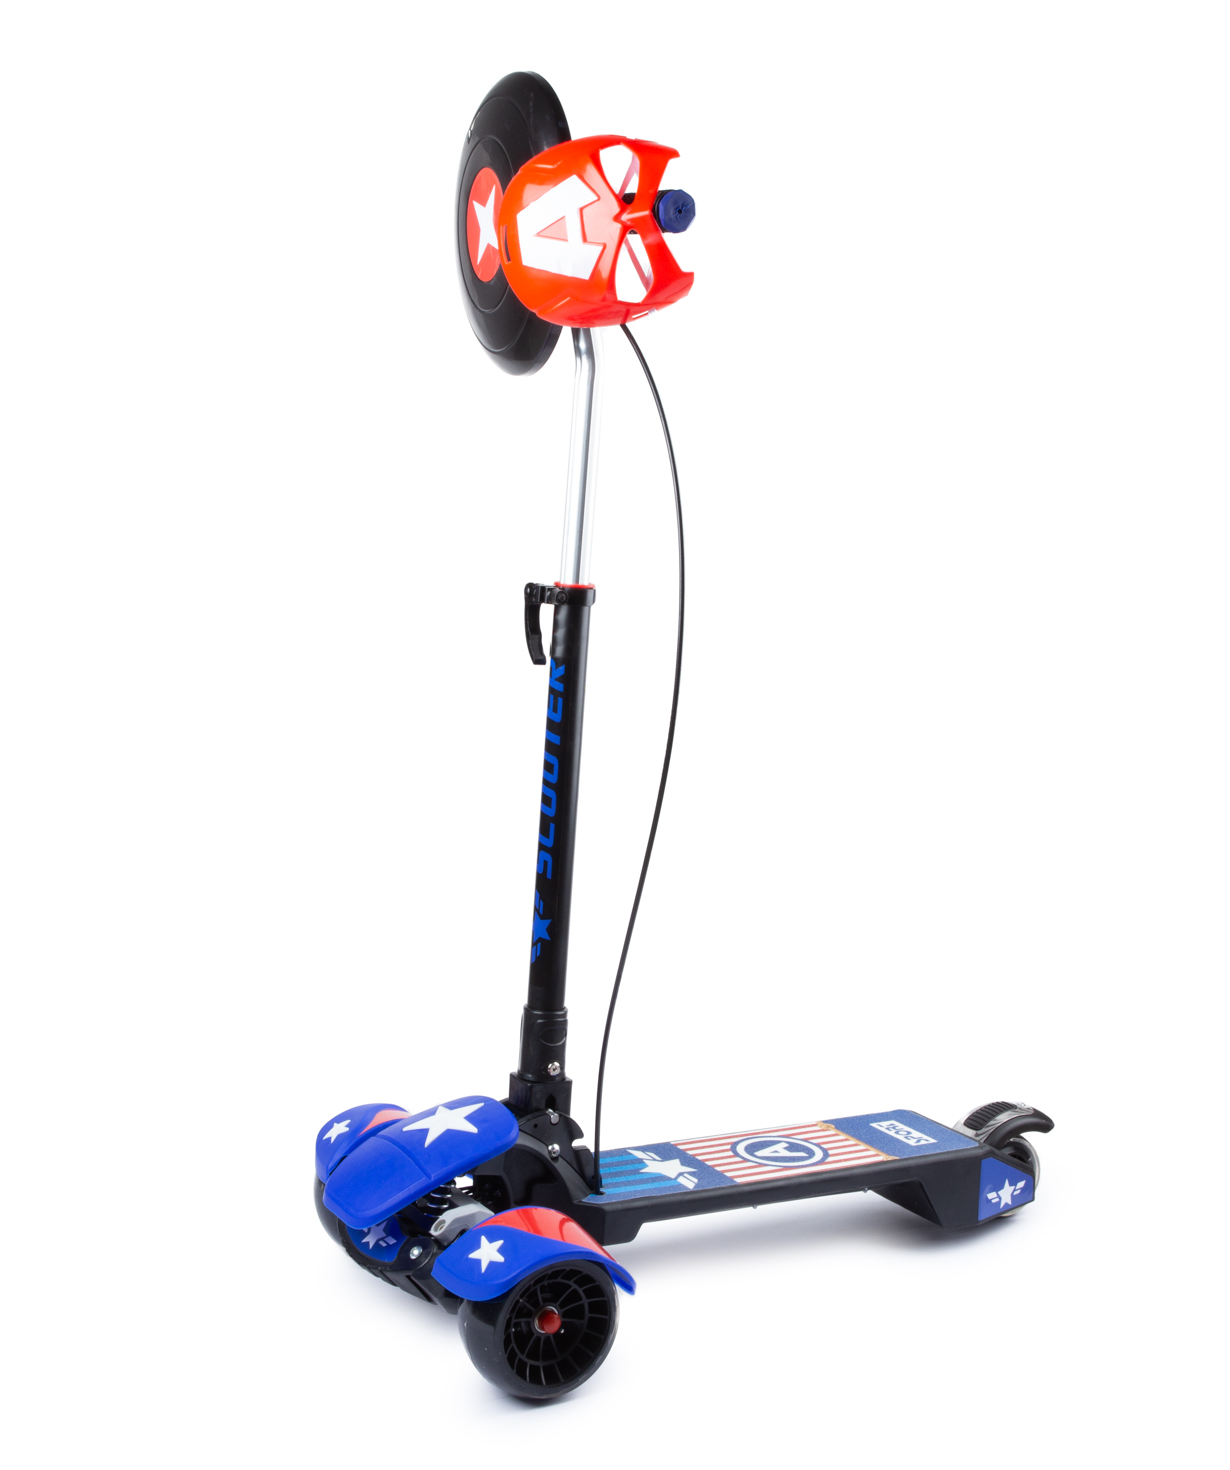 Скутер PE-15081 со световым эффектом, маской и ручным тормозом